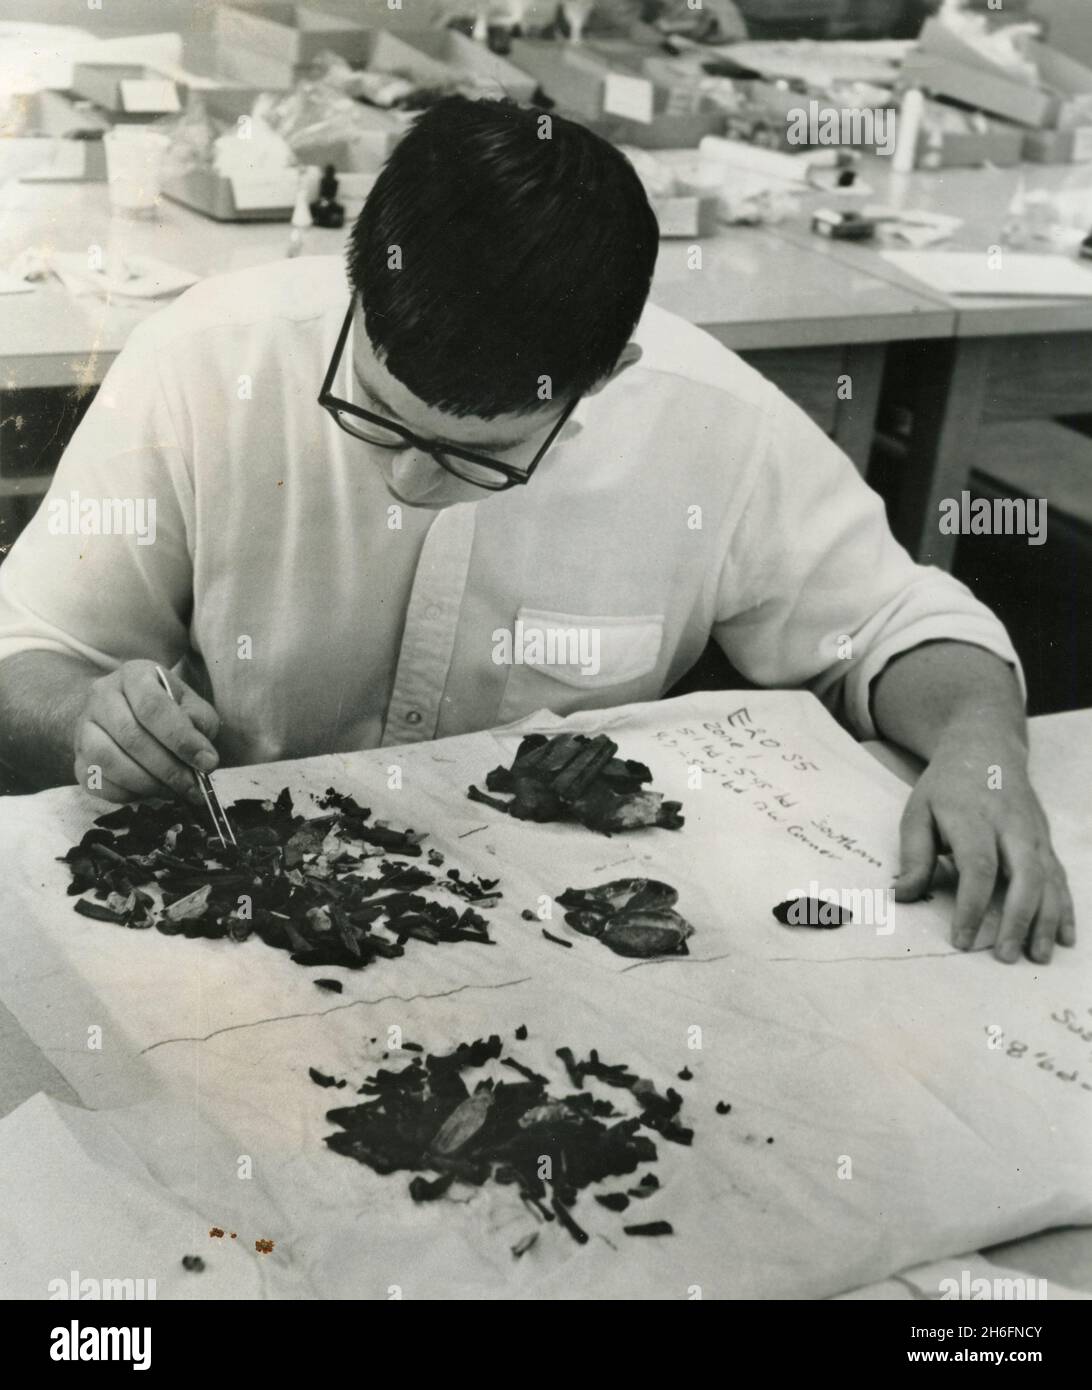 Étudiant en archéologie travaillant dans la nouvelle salle scientifique de Juniata College, Huntingdon, Penn, USA 1967 Banque D'Images